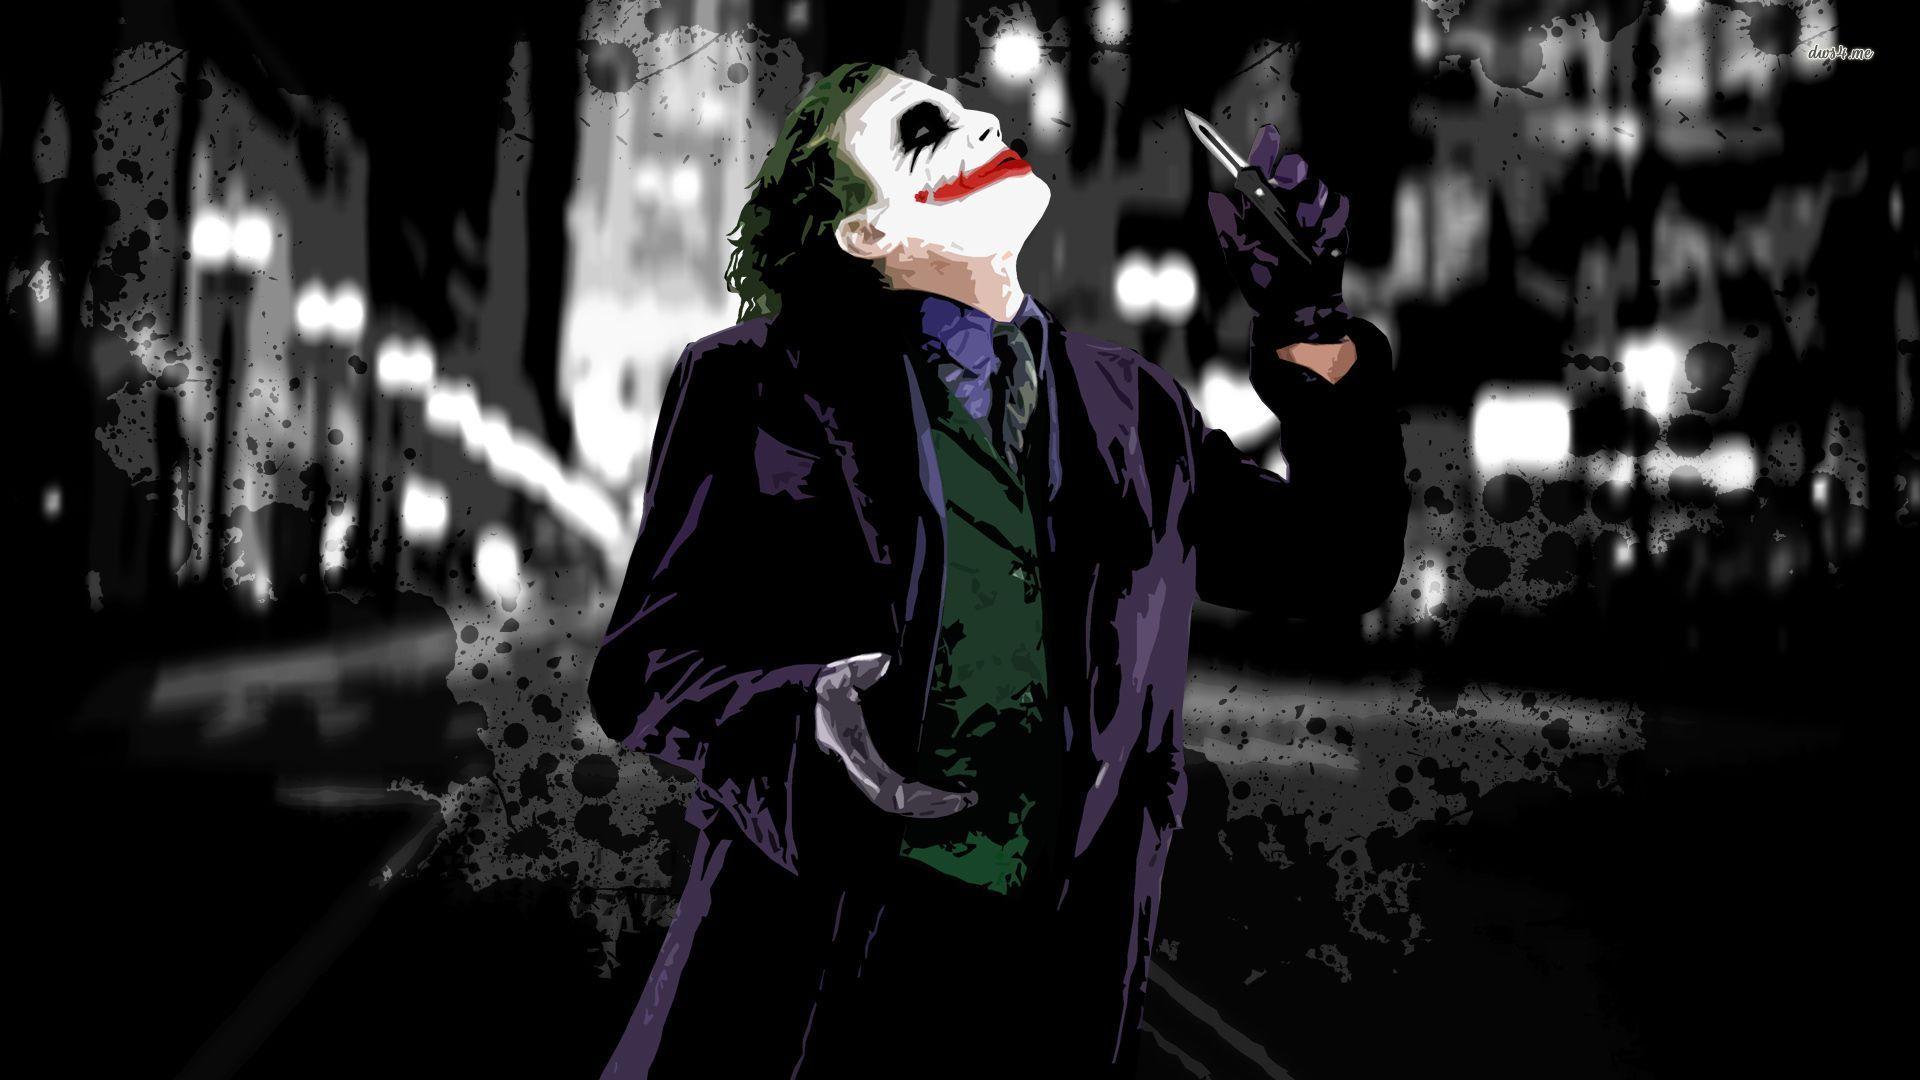 Wallpaper For > Joker Wallpaper Dark Knight HD